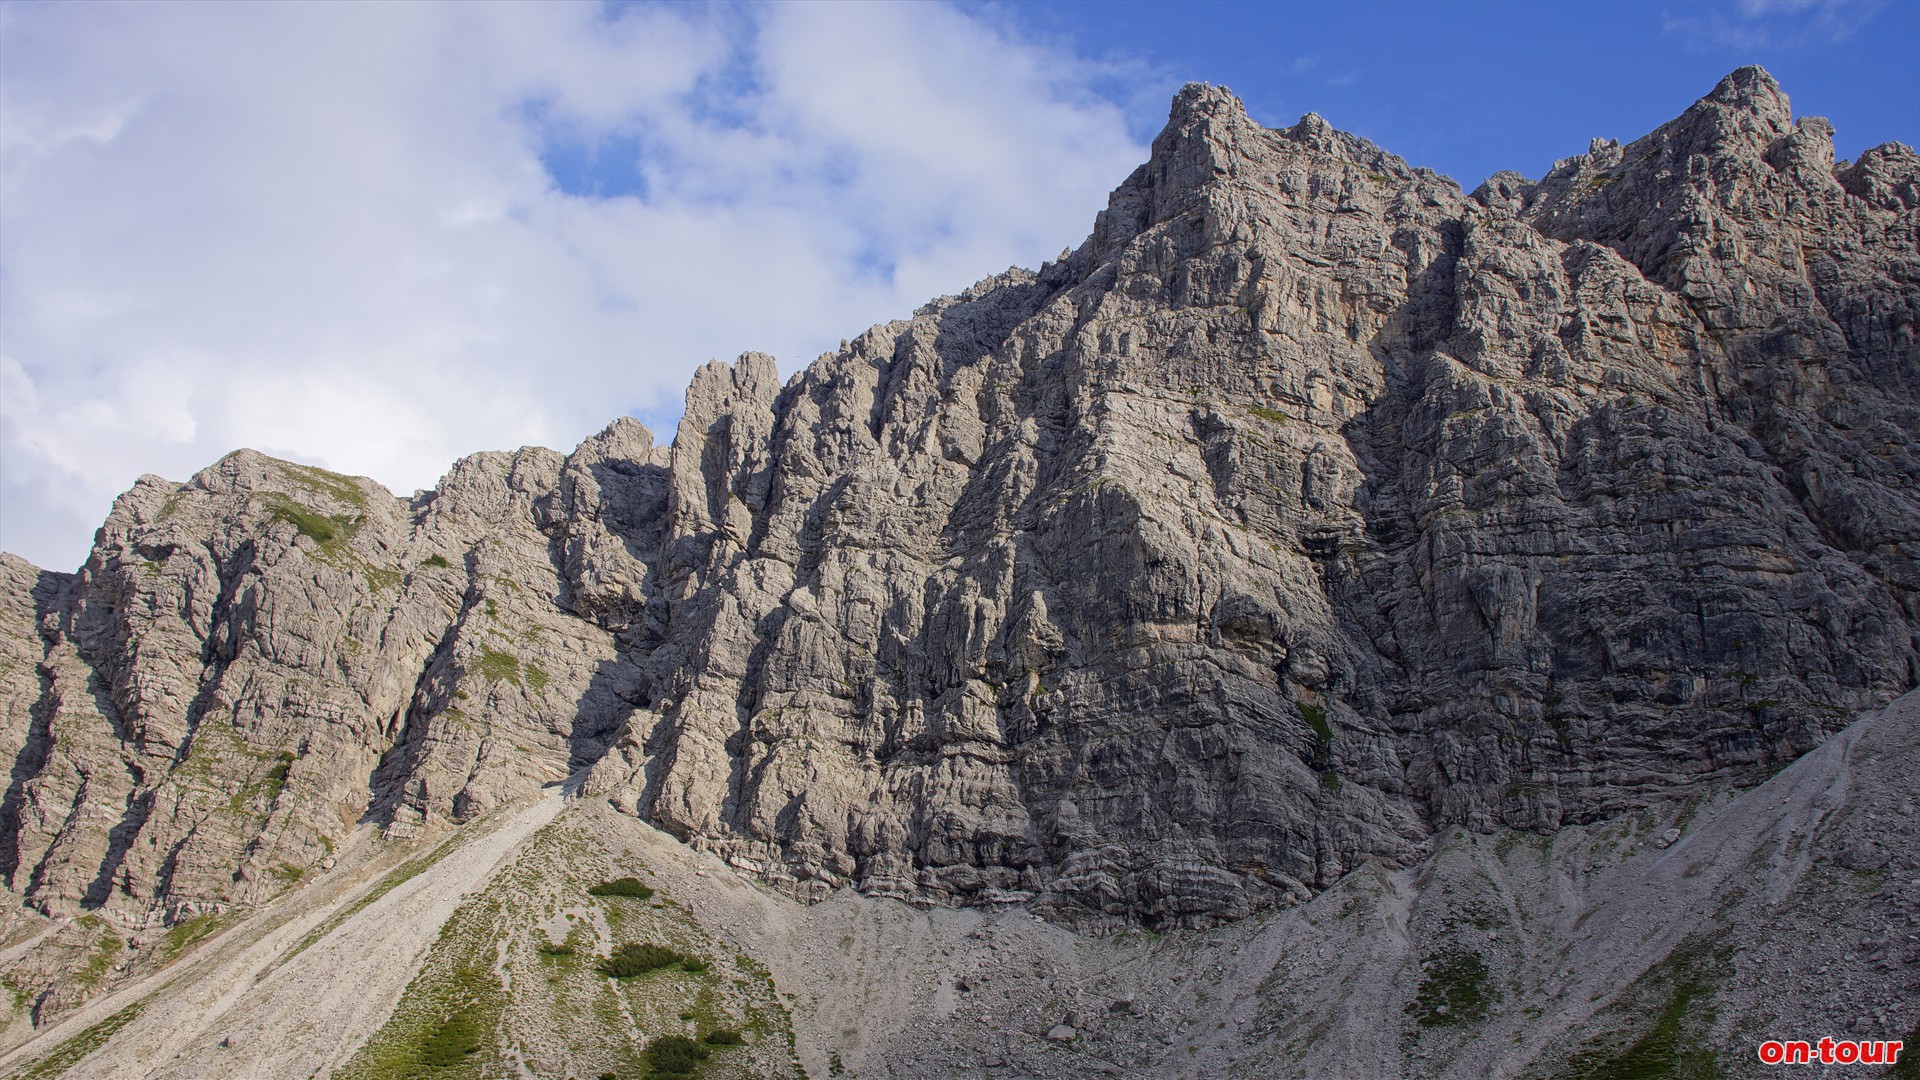 Aufstieg zur Lachenspitze: Optional bietet sich der Klettersteig ber die eindrucksvolle Nordwand an. Schwierigkeit: C/D